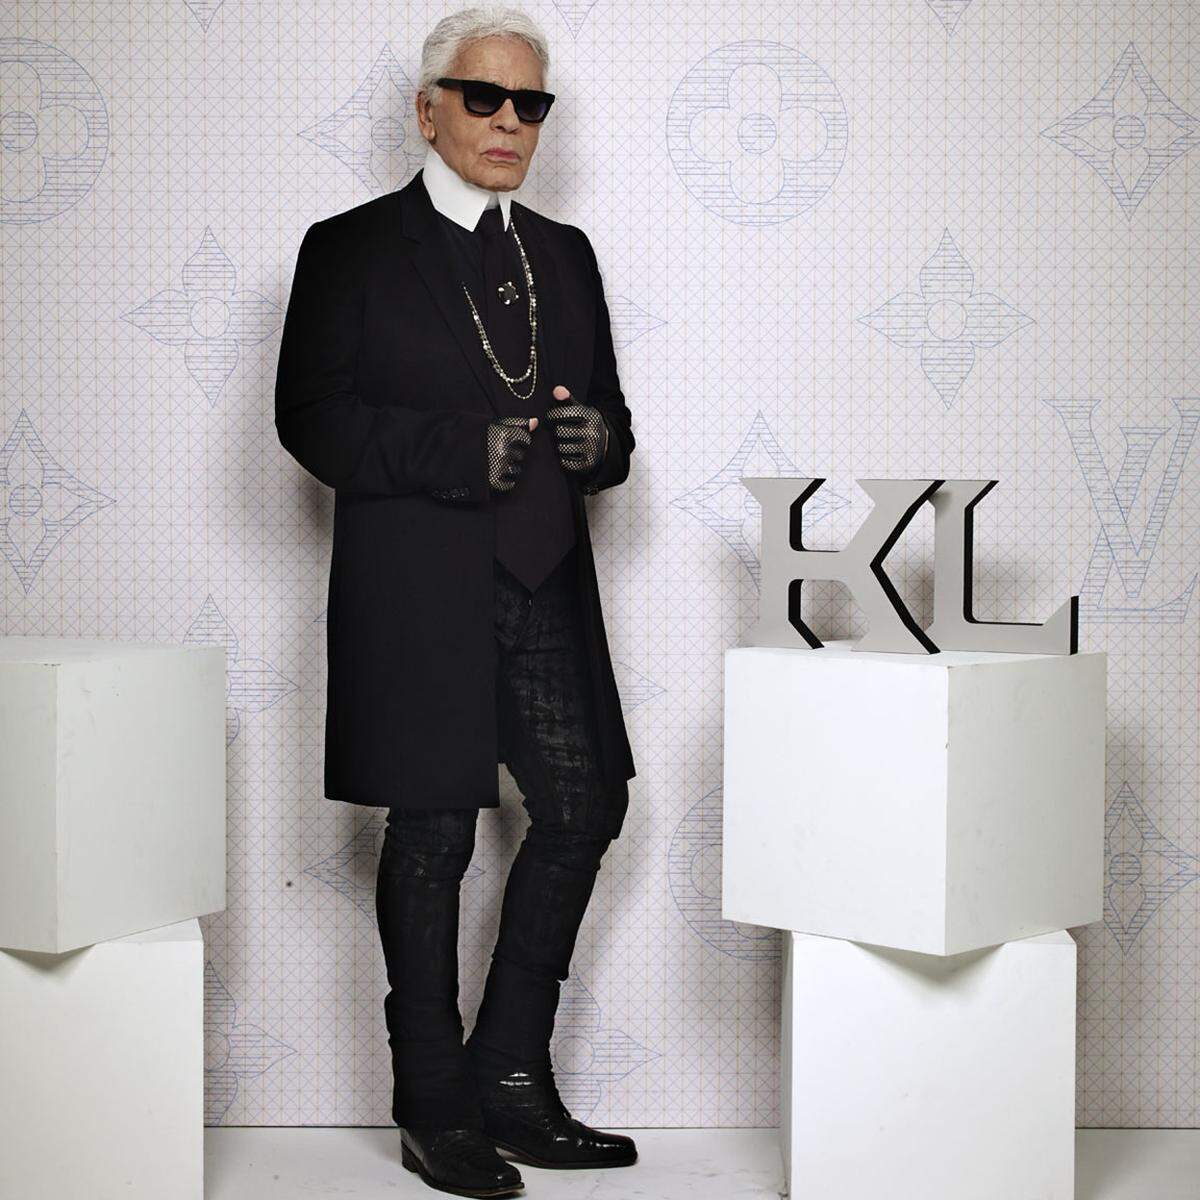 Das kultige LV-Monogramm interpretierte etwa Chanel-Designer Karl Lagerfeld für eine limitierte Edition neu. 